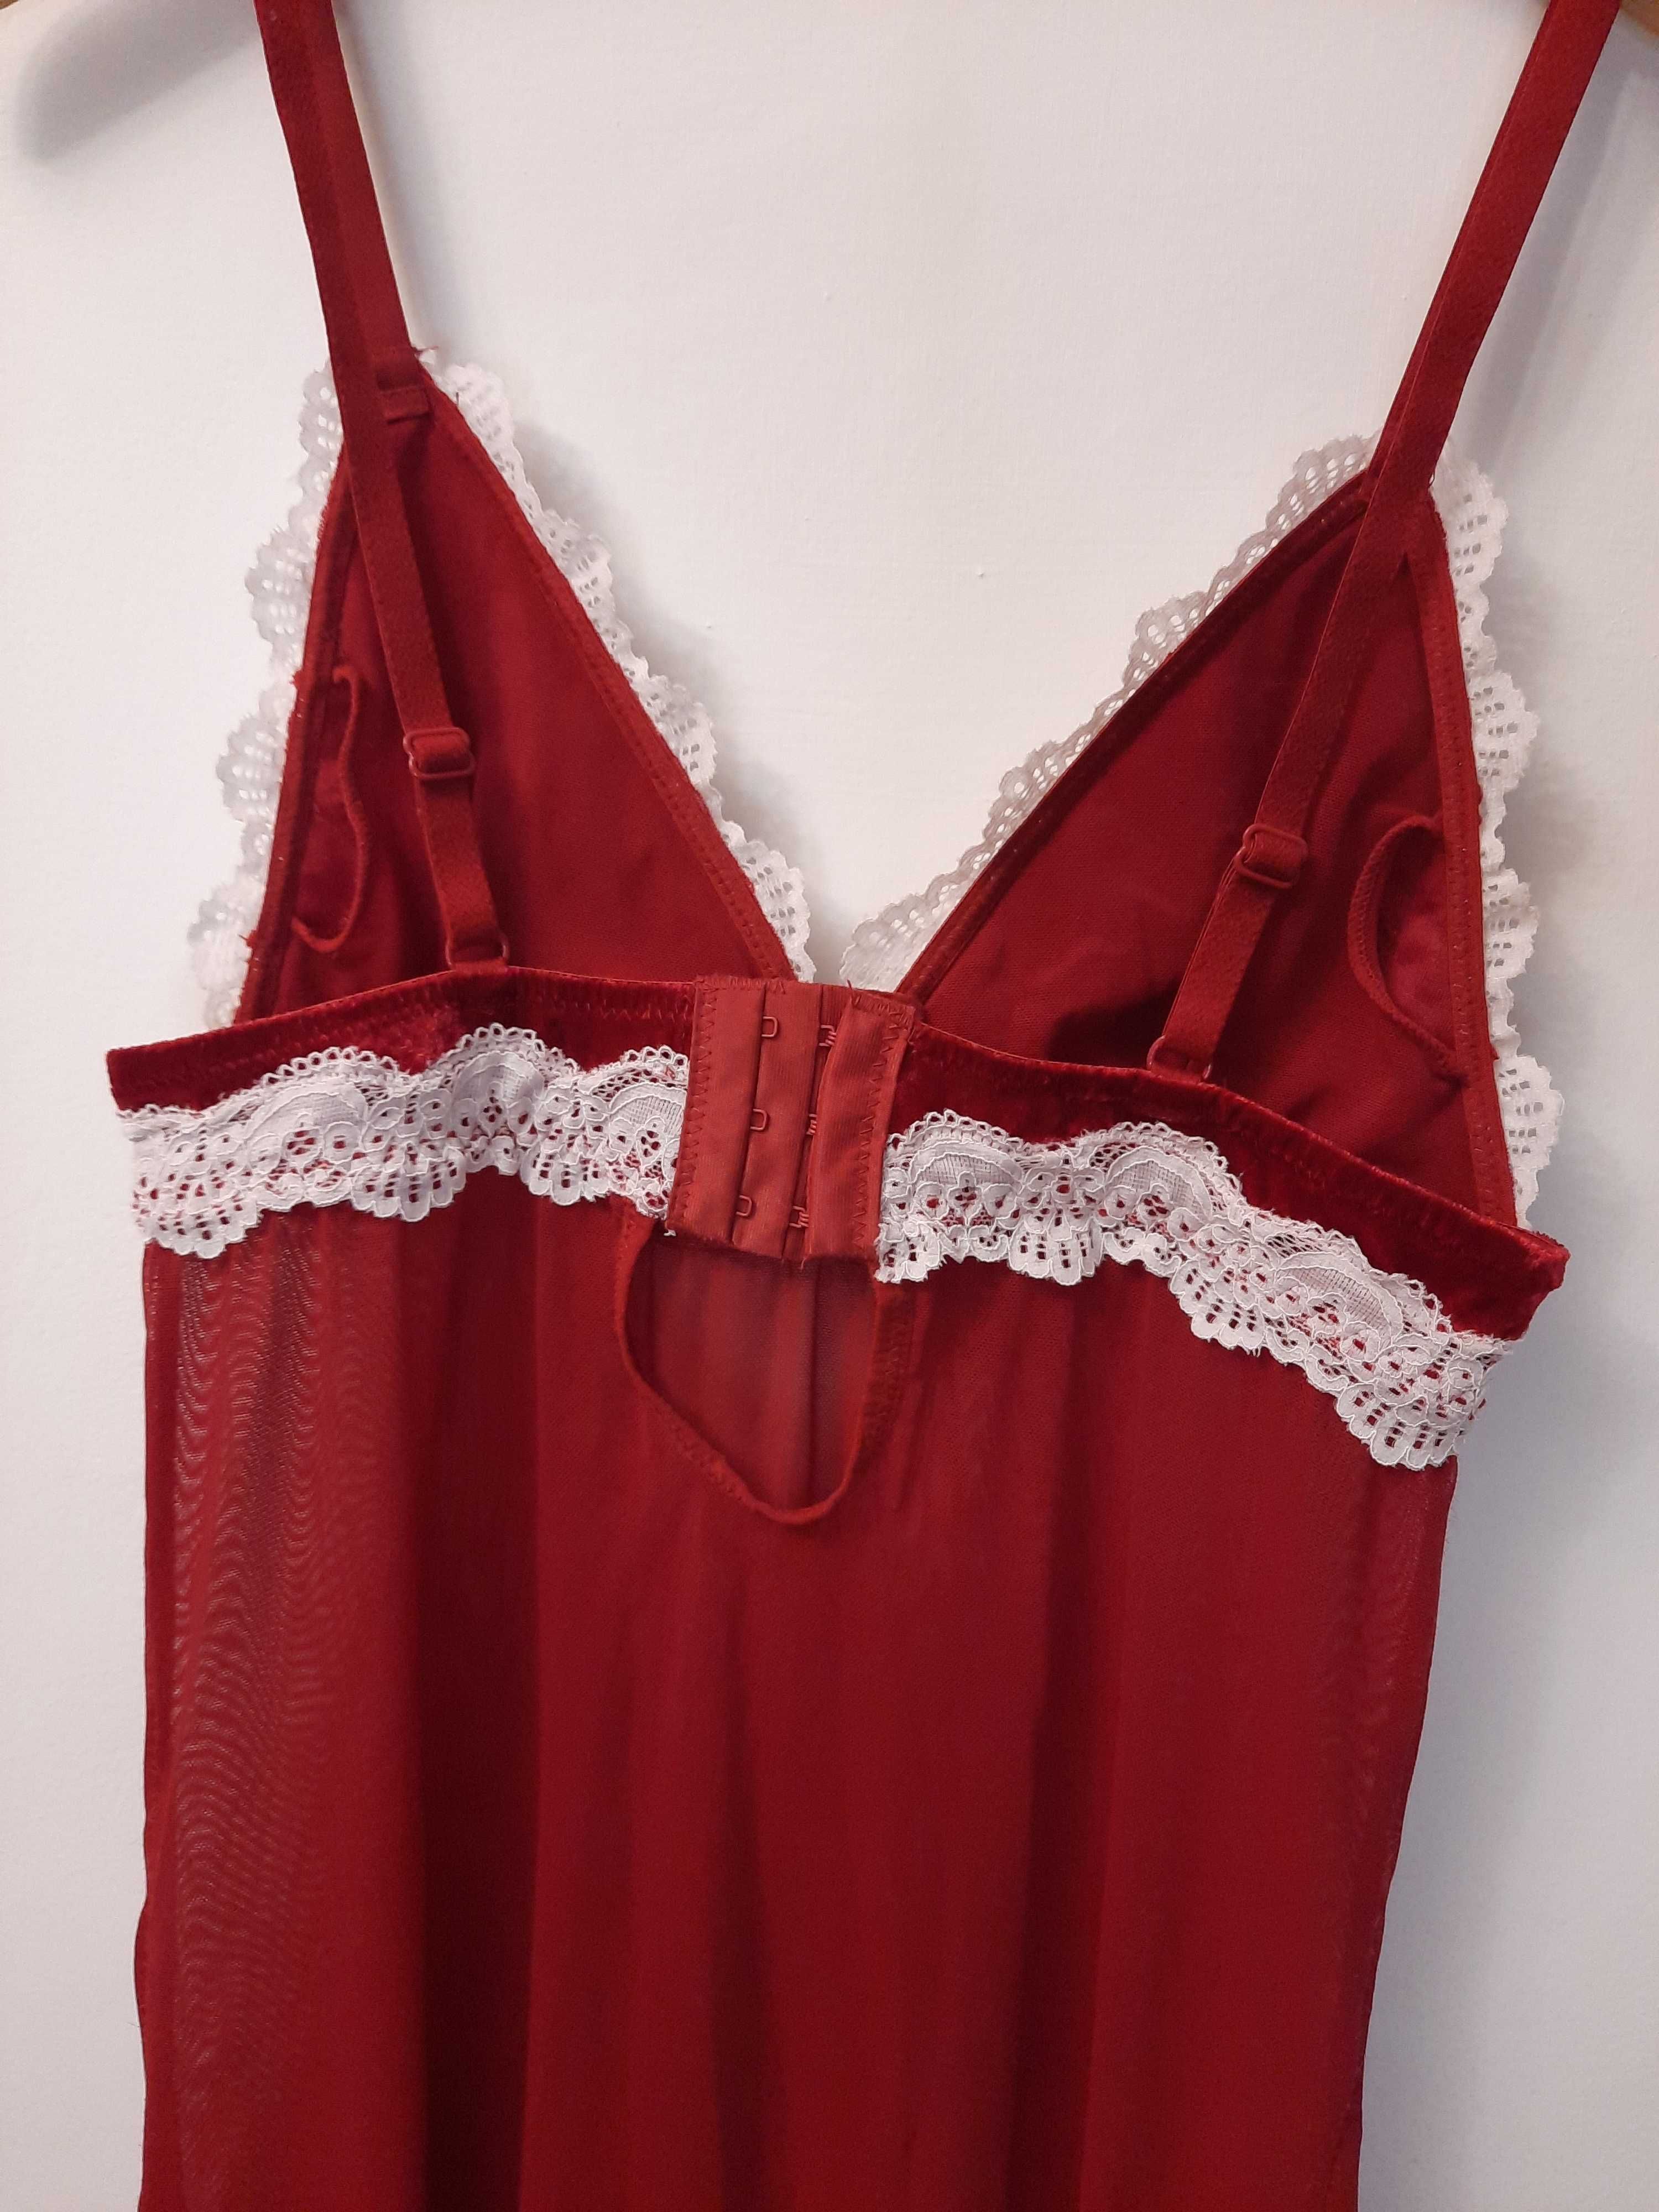 Koszulka nocna seksowna przezroczysta czerwona halka Vrs Woman S 36